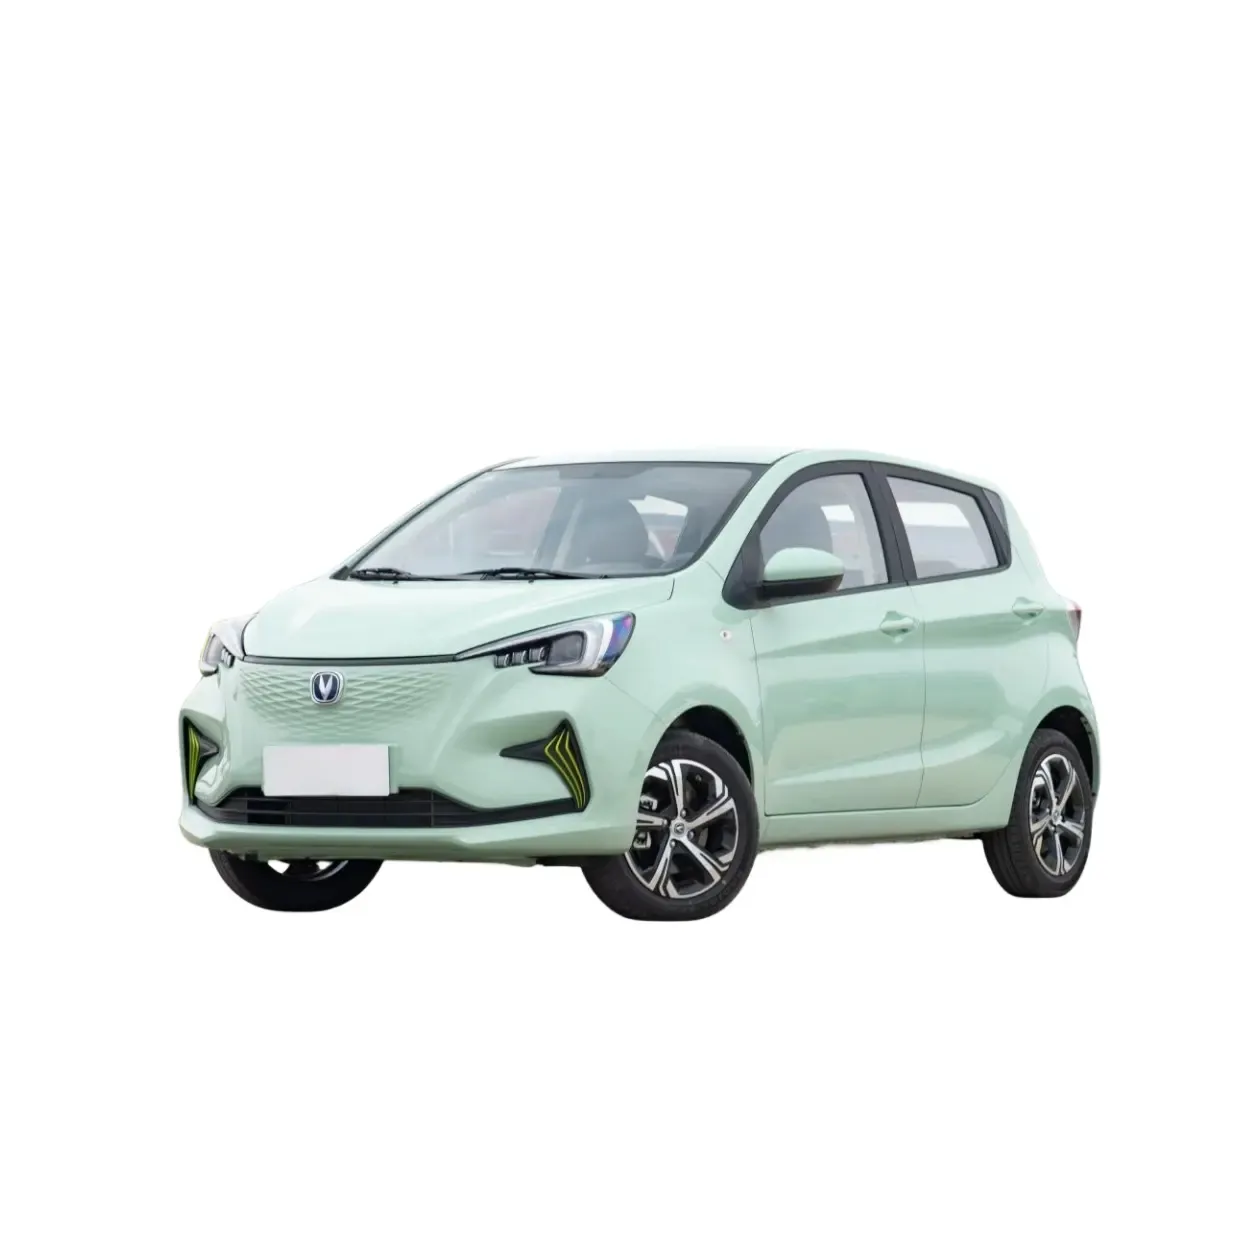 2024 vendita calda Mini auto elettrica adulti CHANGAN E-Star nuovo veicolo energetico 310km BenBen e-star Mini EV Car